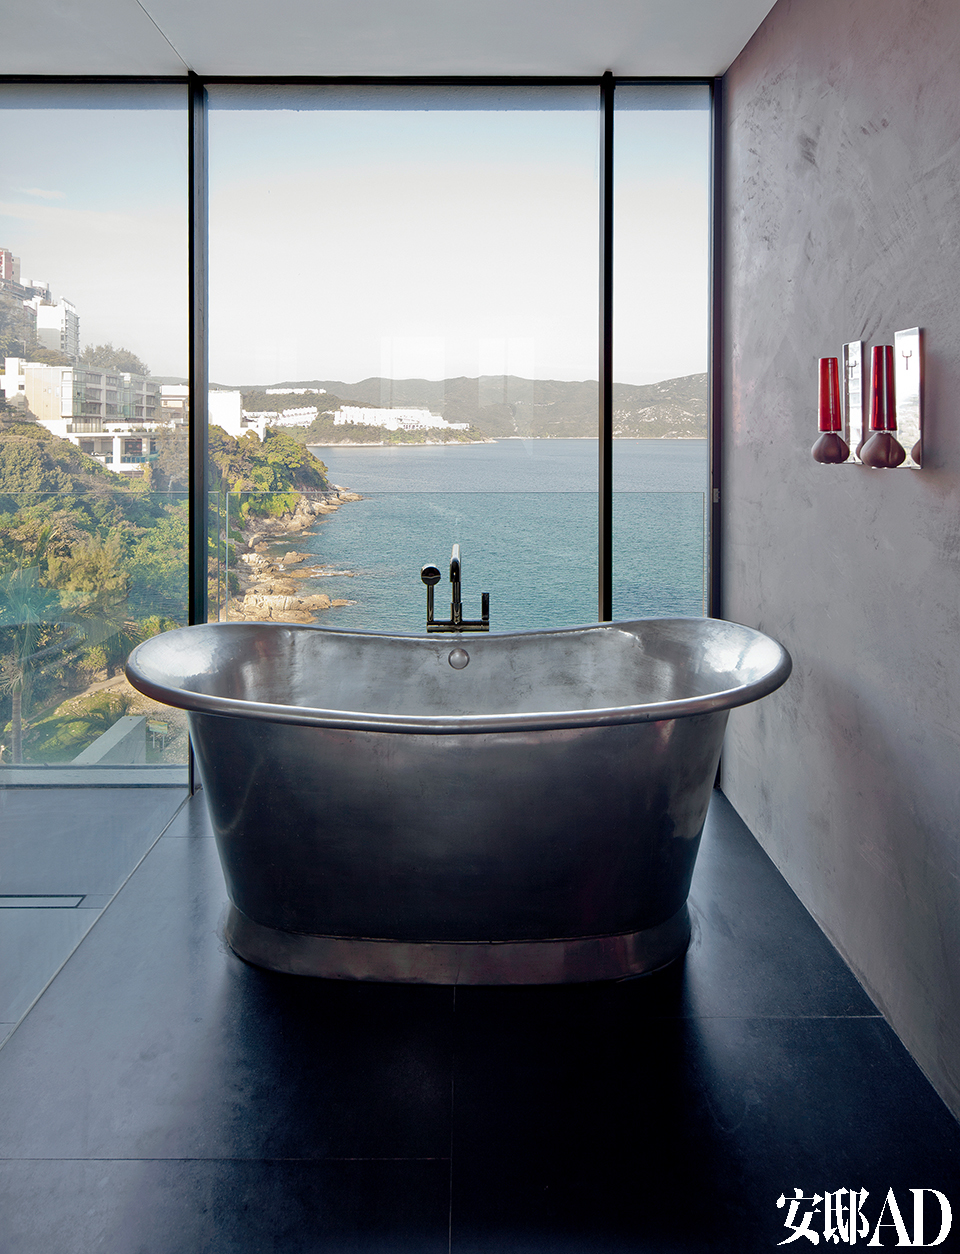 在寸土寸金的香港，躺在浴缸里享受窗外无敌海景，是件多么幸福而奢侈的事！独立式浴缸来自英国品牌Brissi。考虑到私密性，玻璃窗装有特殊装置。